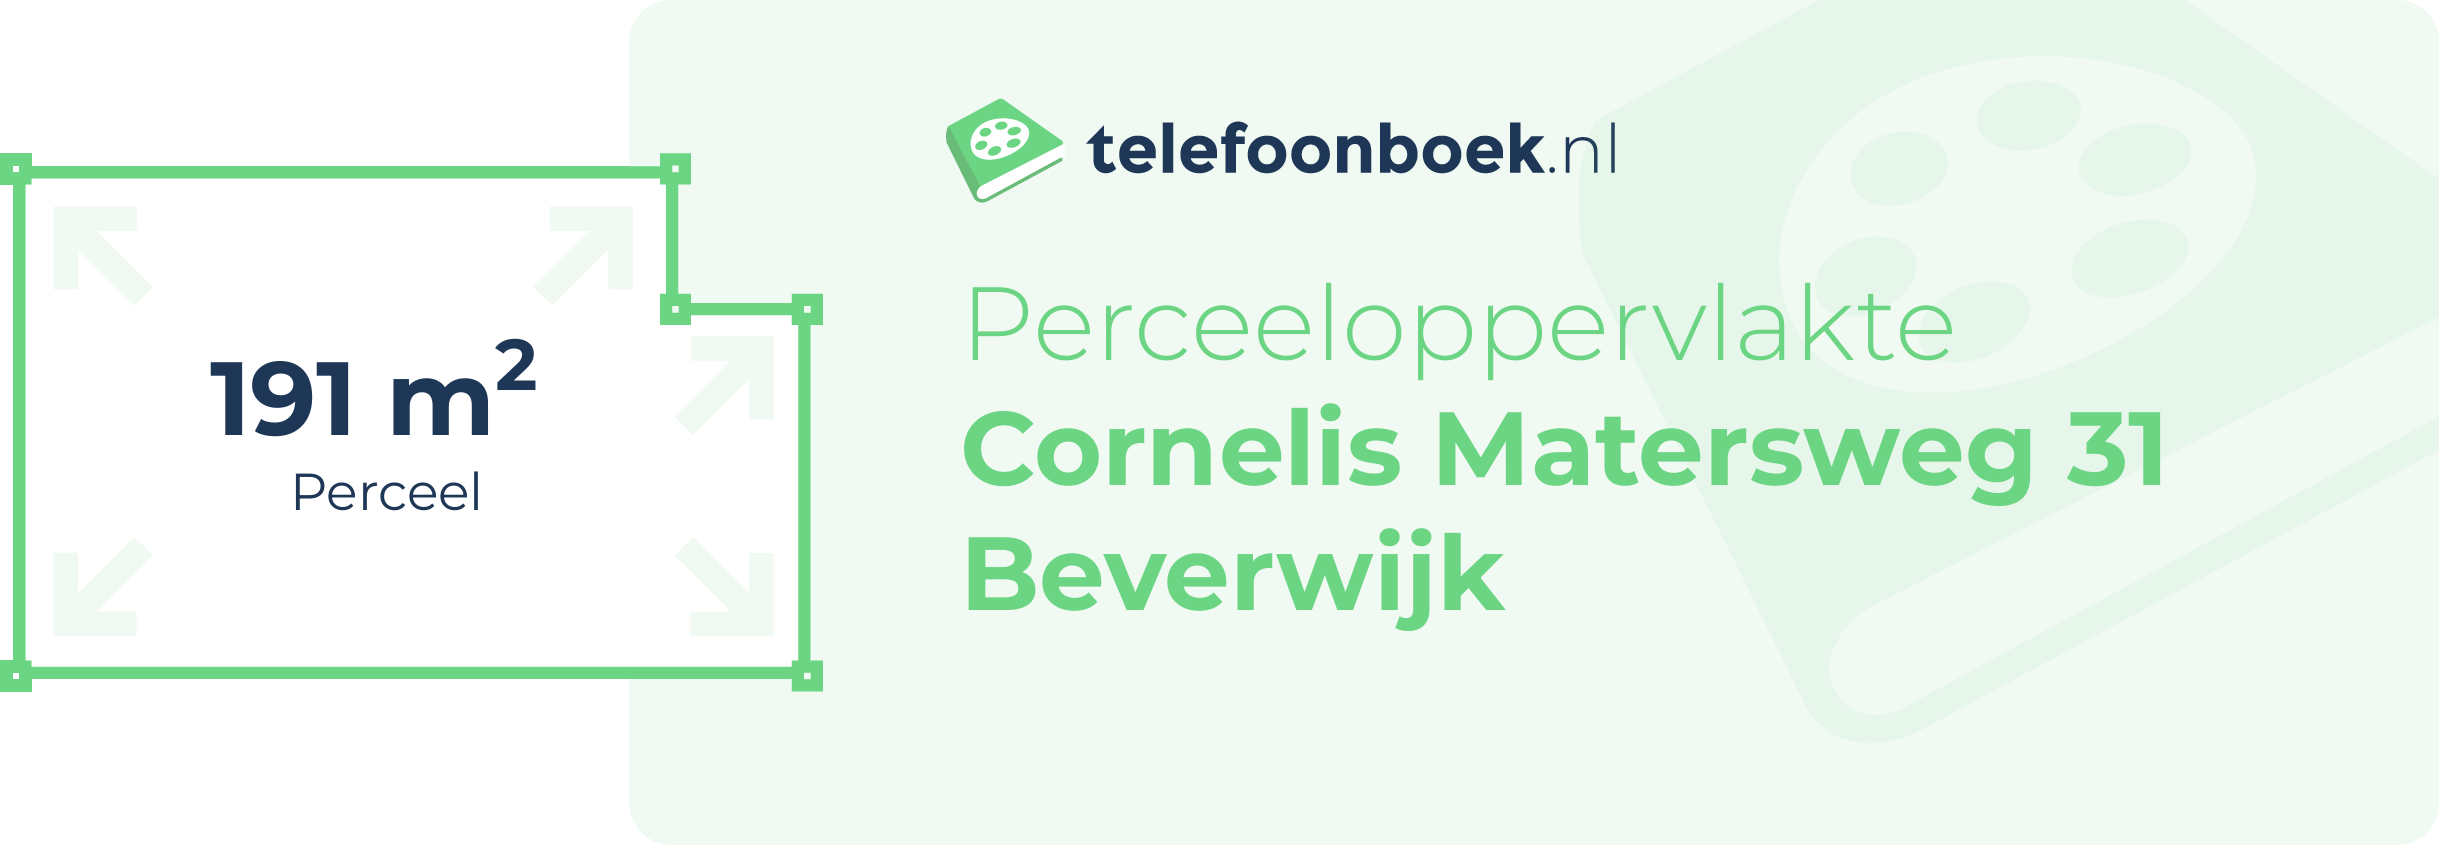 Perceeloppervlakte Cornelis Matersweg 31 Beverwijk